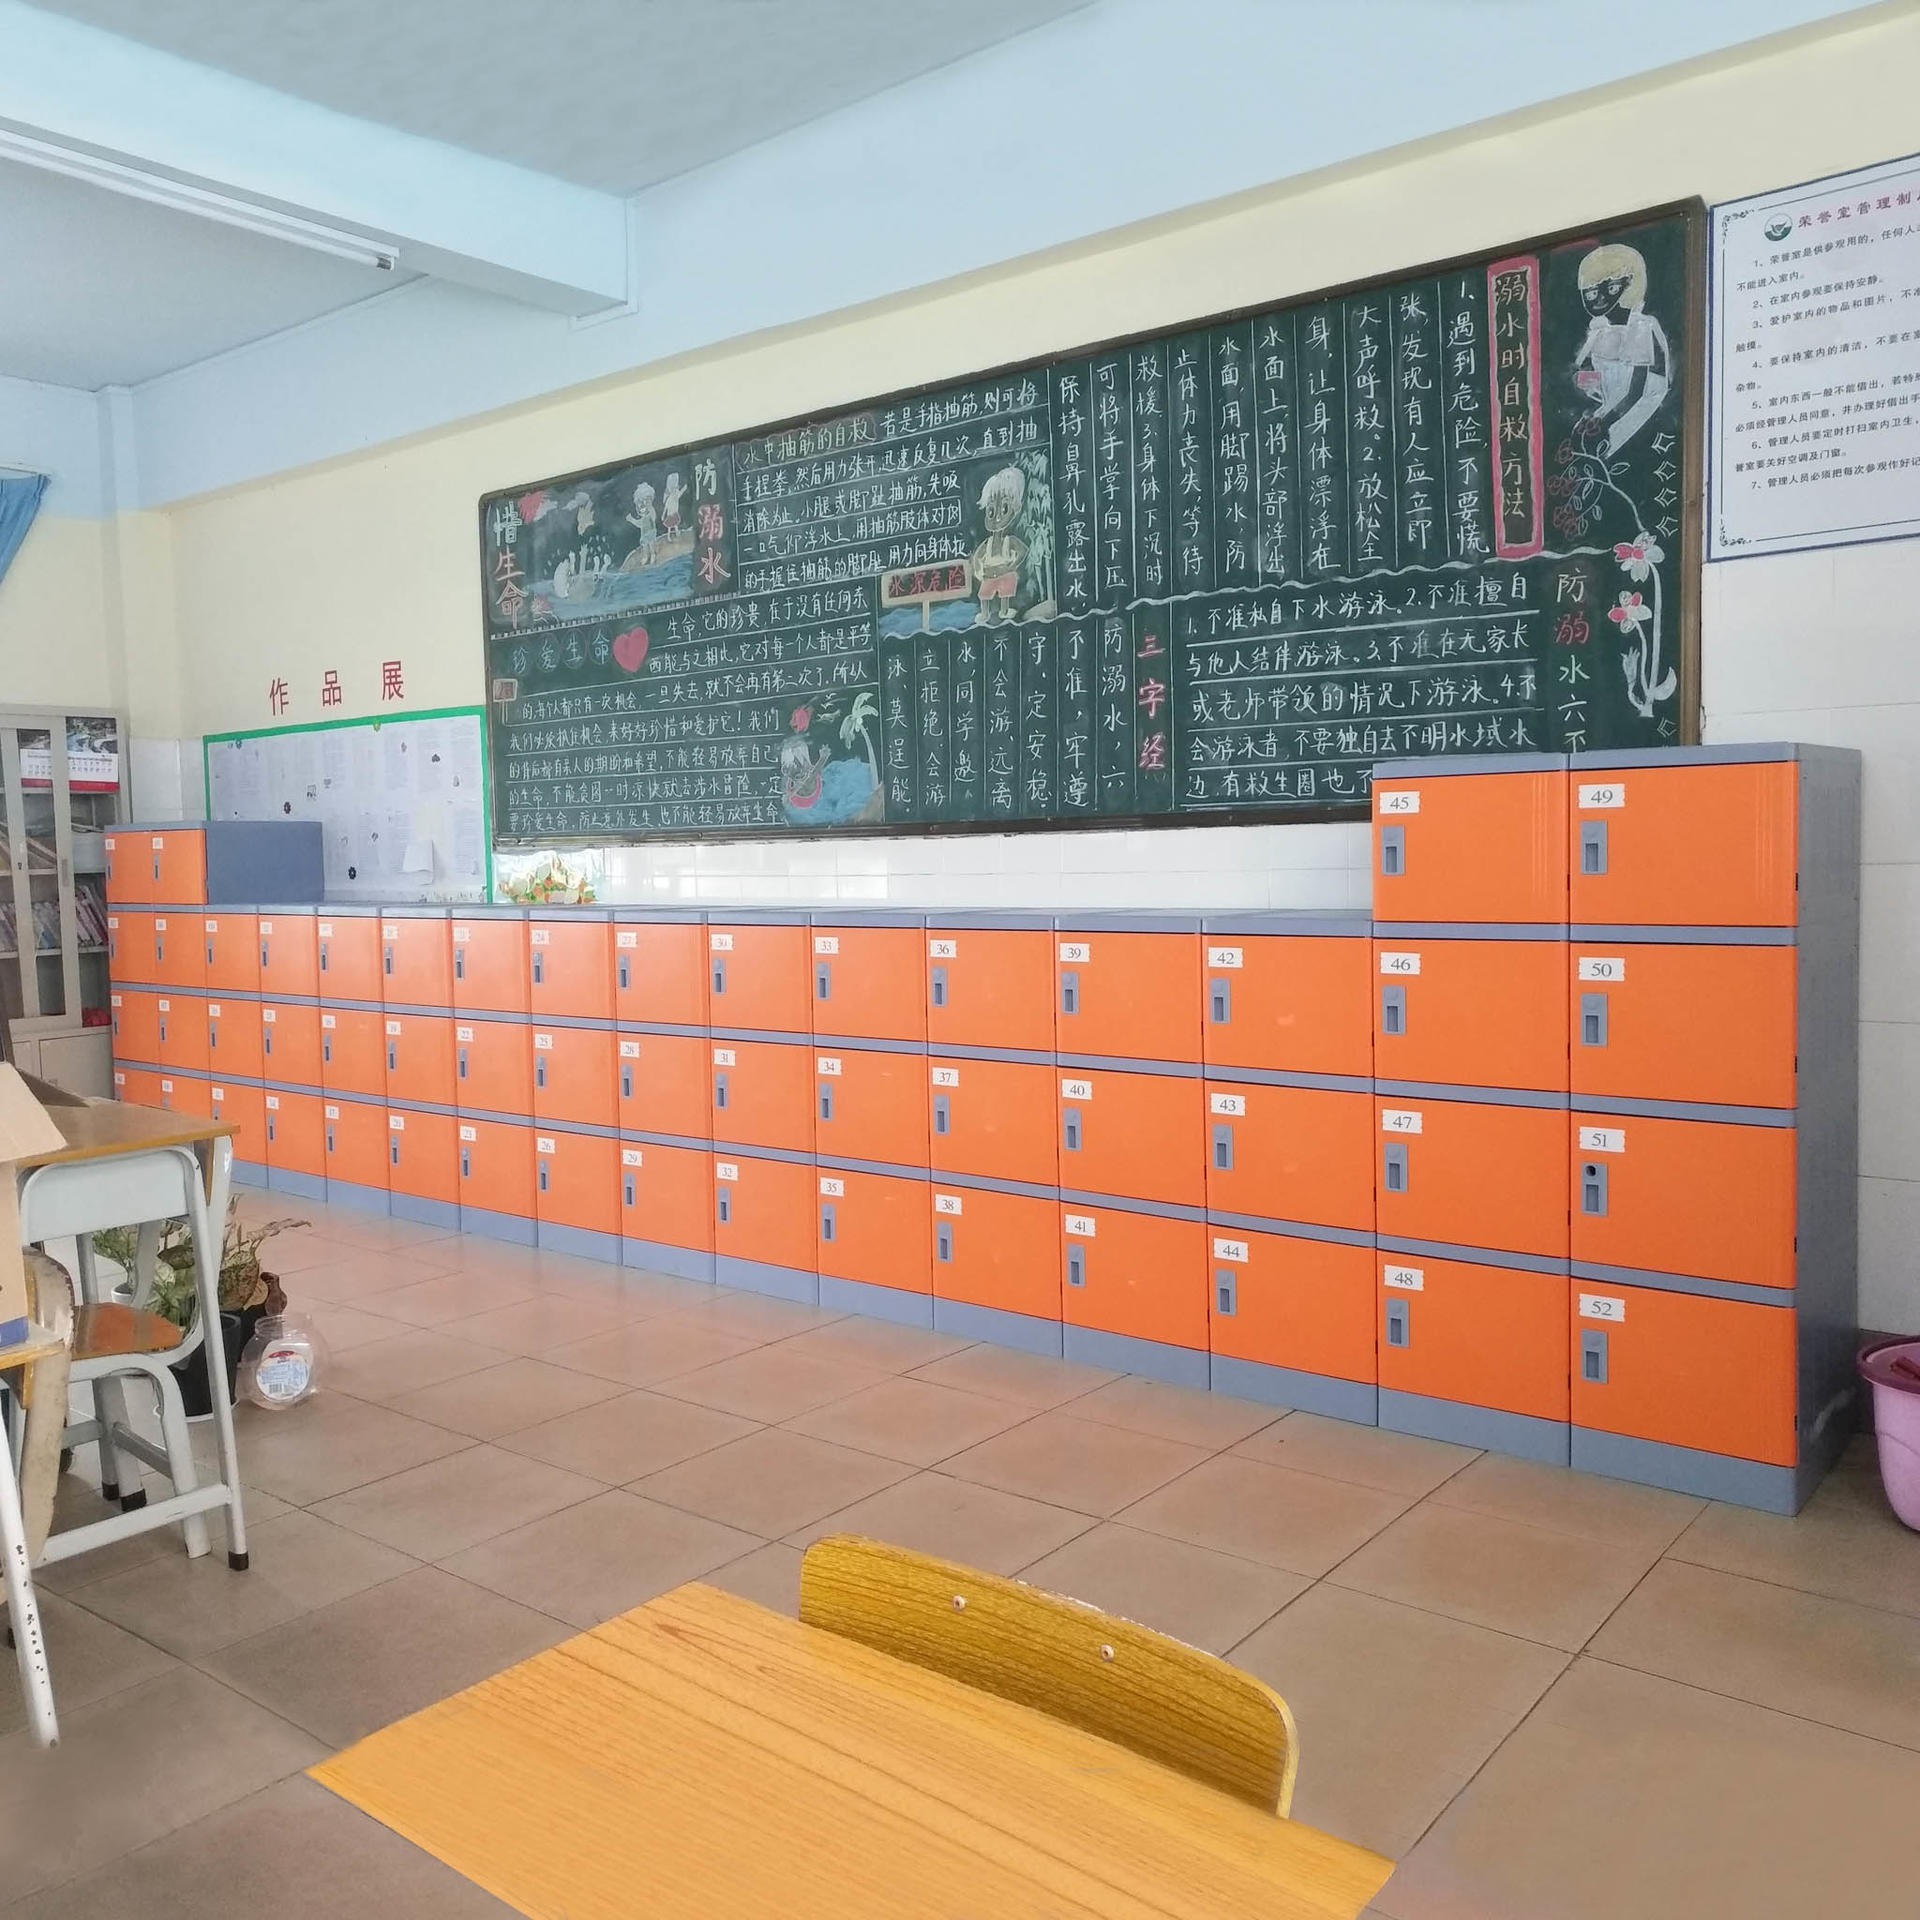 好柜子牌幼儿园abs塑料书包柜 学生宿舍储物柜  教室走廊储物柜厂家现货供应图片